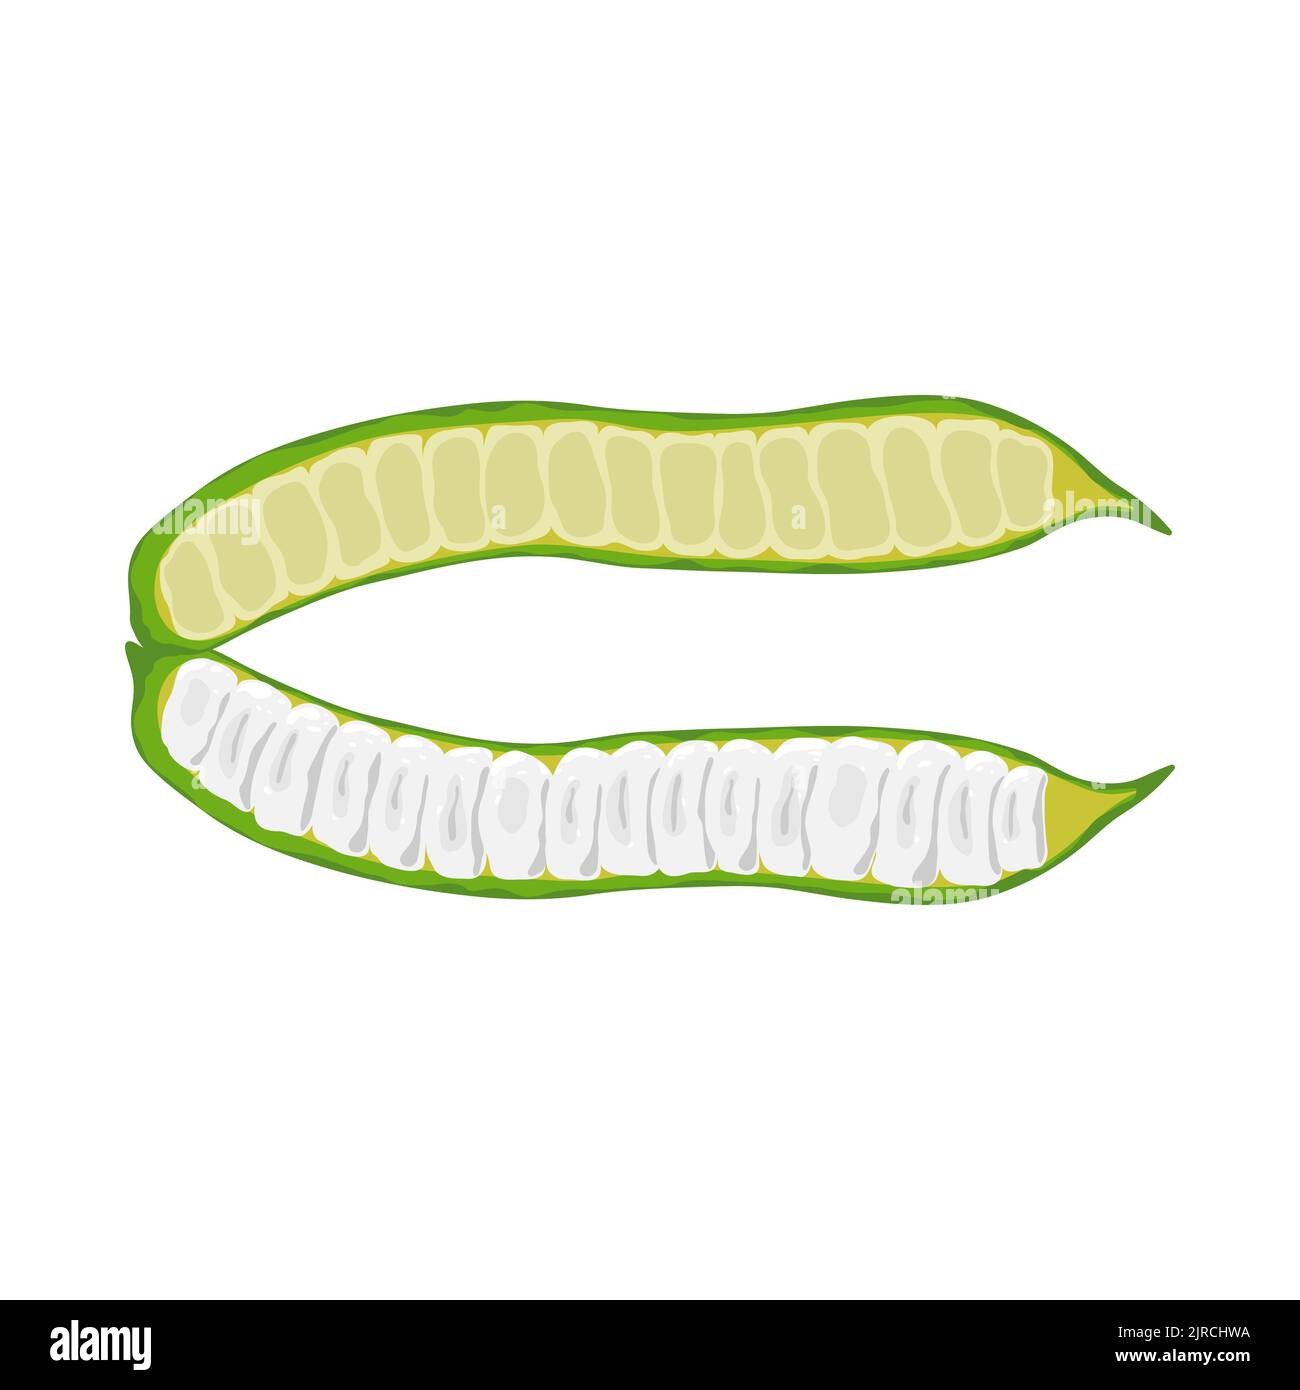 Judías verdes aisladas sobre fondo blanco. Planta leguminosa, fruto leguminoso. Vainas Guaba Helado Frijoles o Inga edulis. Ilustración vectorial. Ilustración del Vector